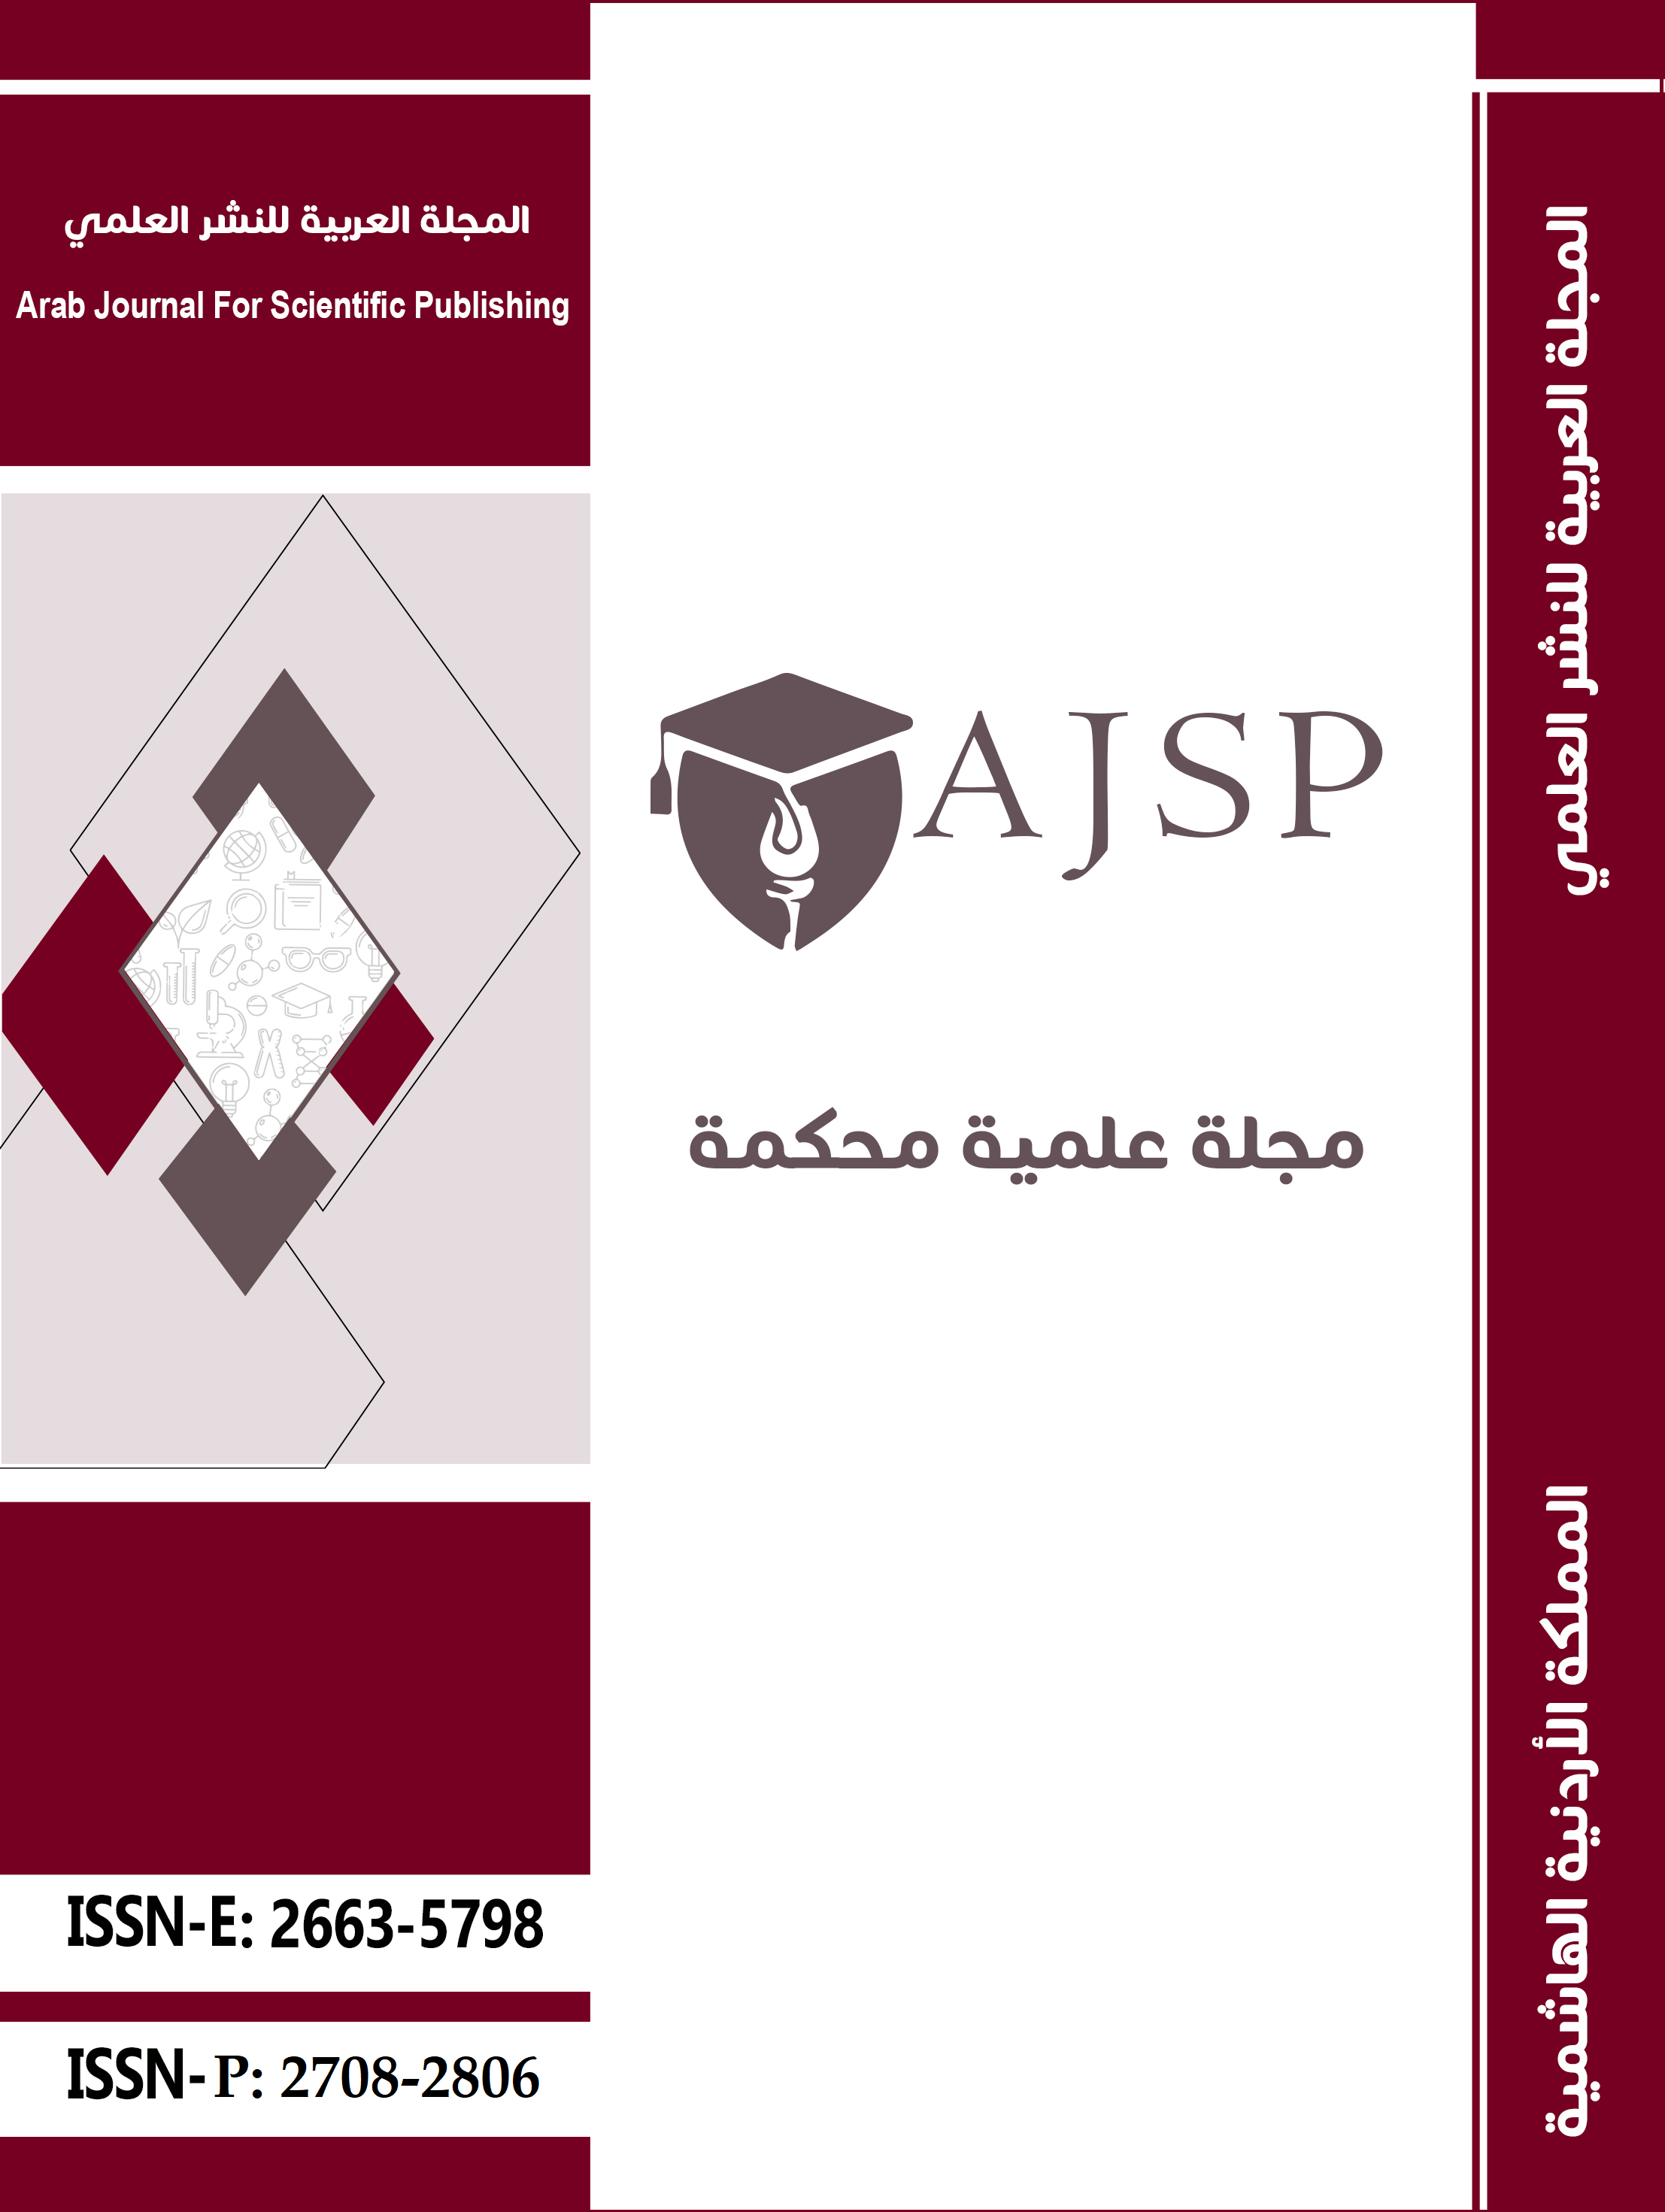 دور المنظمات الدولية في دعم التعليم في المملكة الأردنية الهاشمية